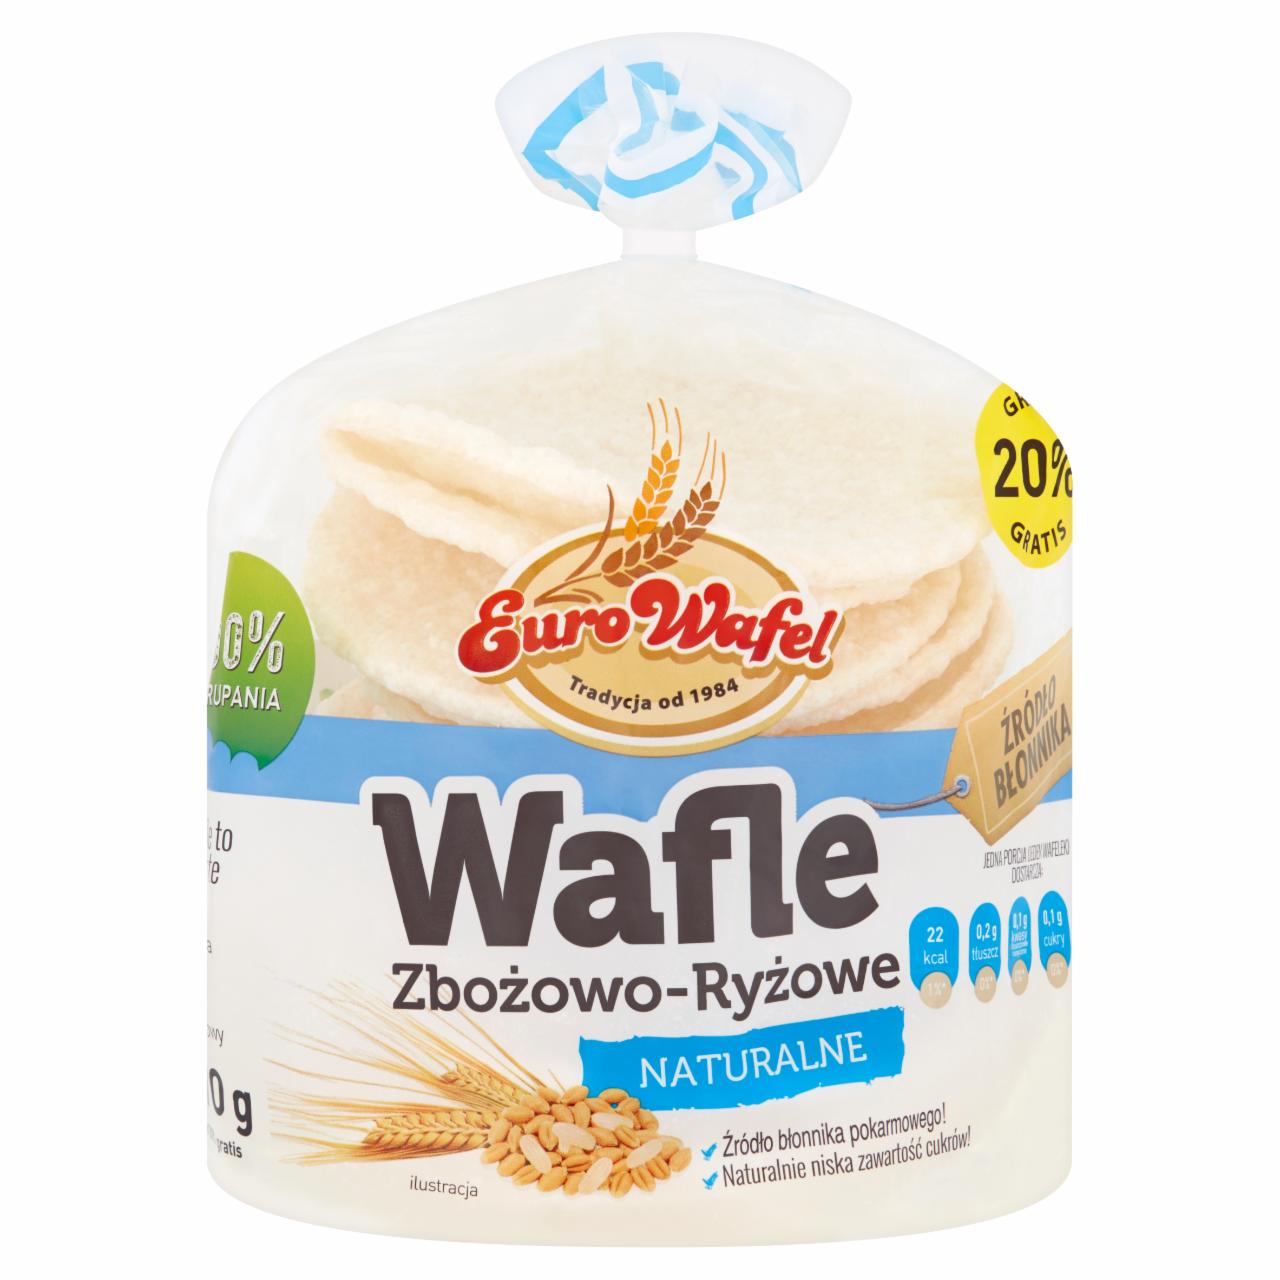 Zdjęcia - Eurowafel Wafle zbożowo-ryżowe naturalne 70 g (12 sztuk)